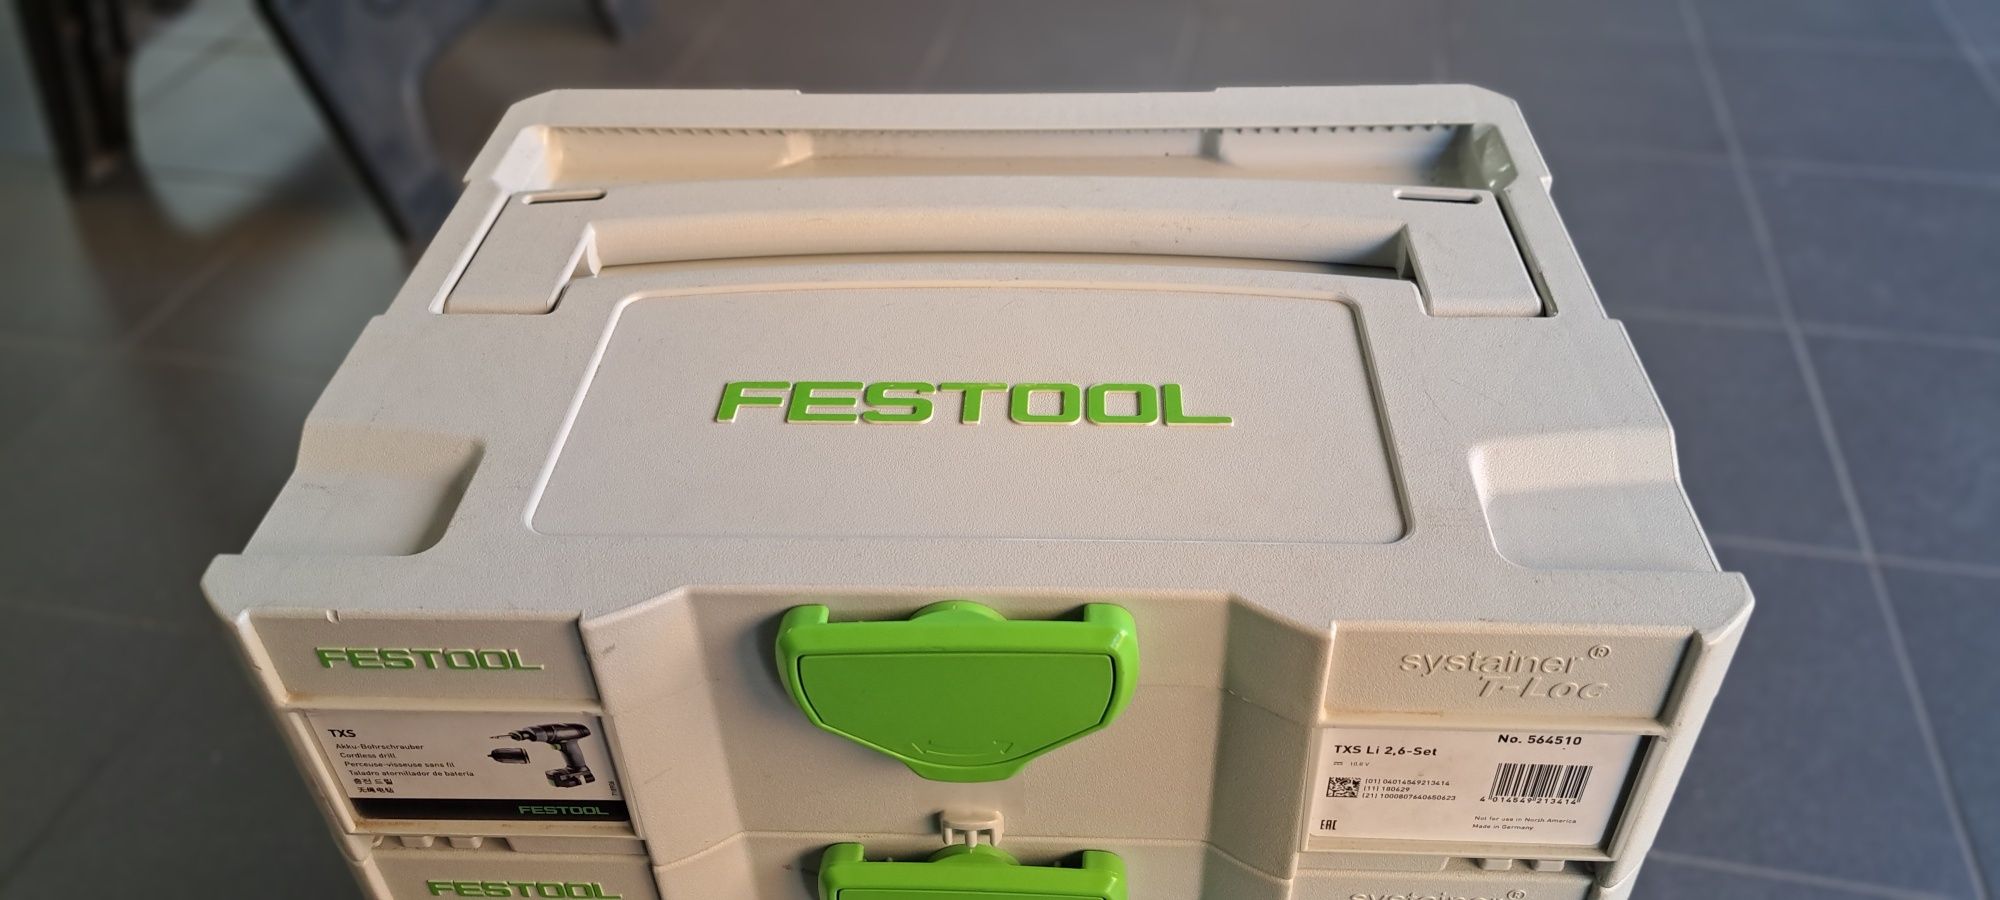 Festool TXS Li 2.6 SET